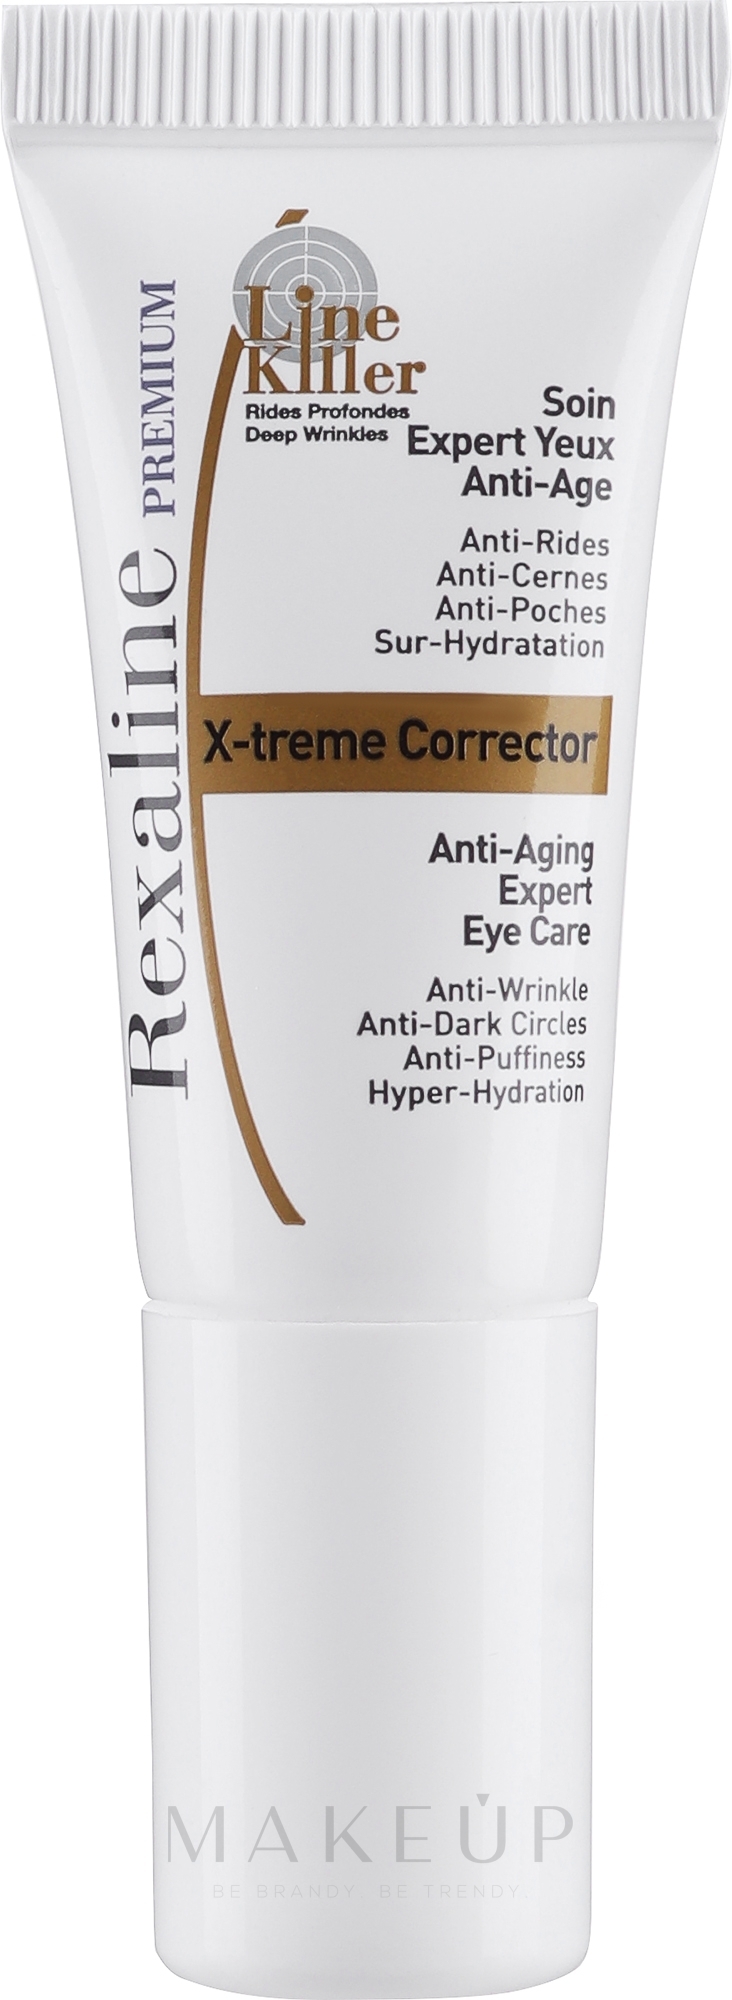 GESCHENK! Anti-Aging-Creme-Experte für die Haut um die Augen - Rexaline Line Killer X-Treme Corrector Cream (Mini)  — Bild 5 ml